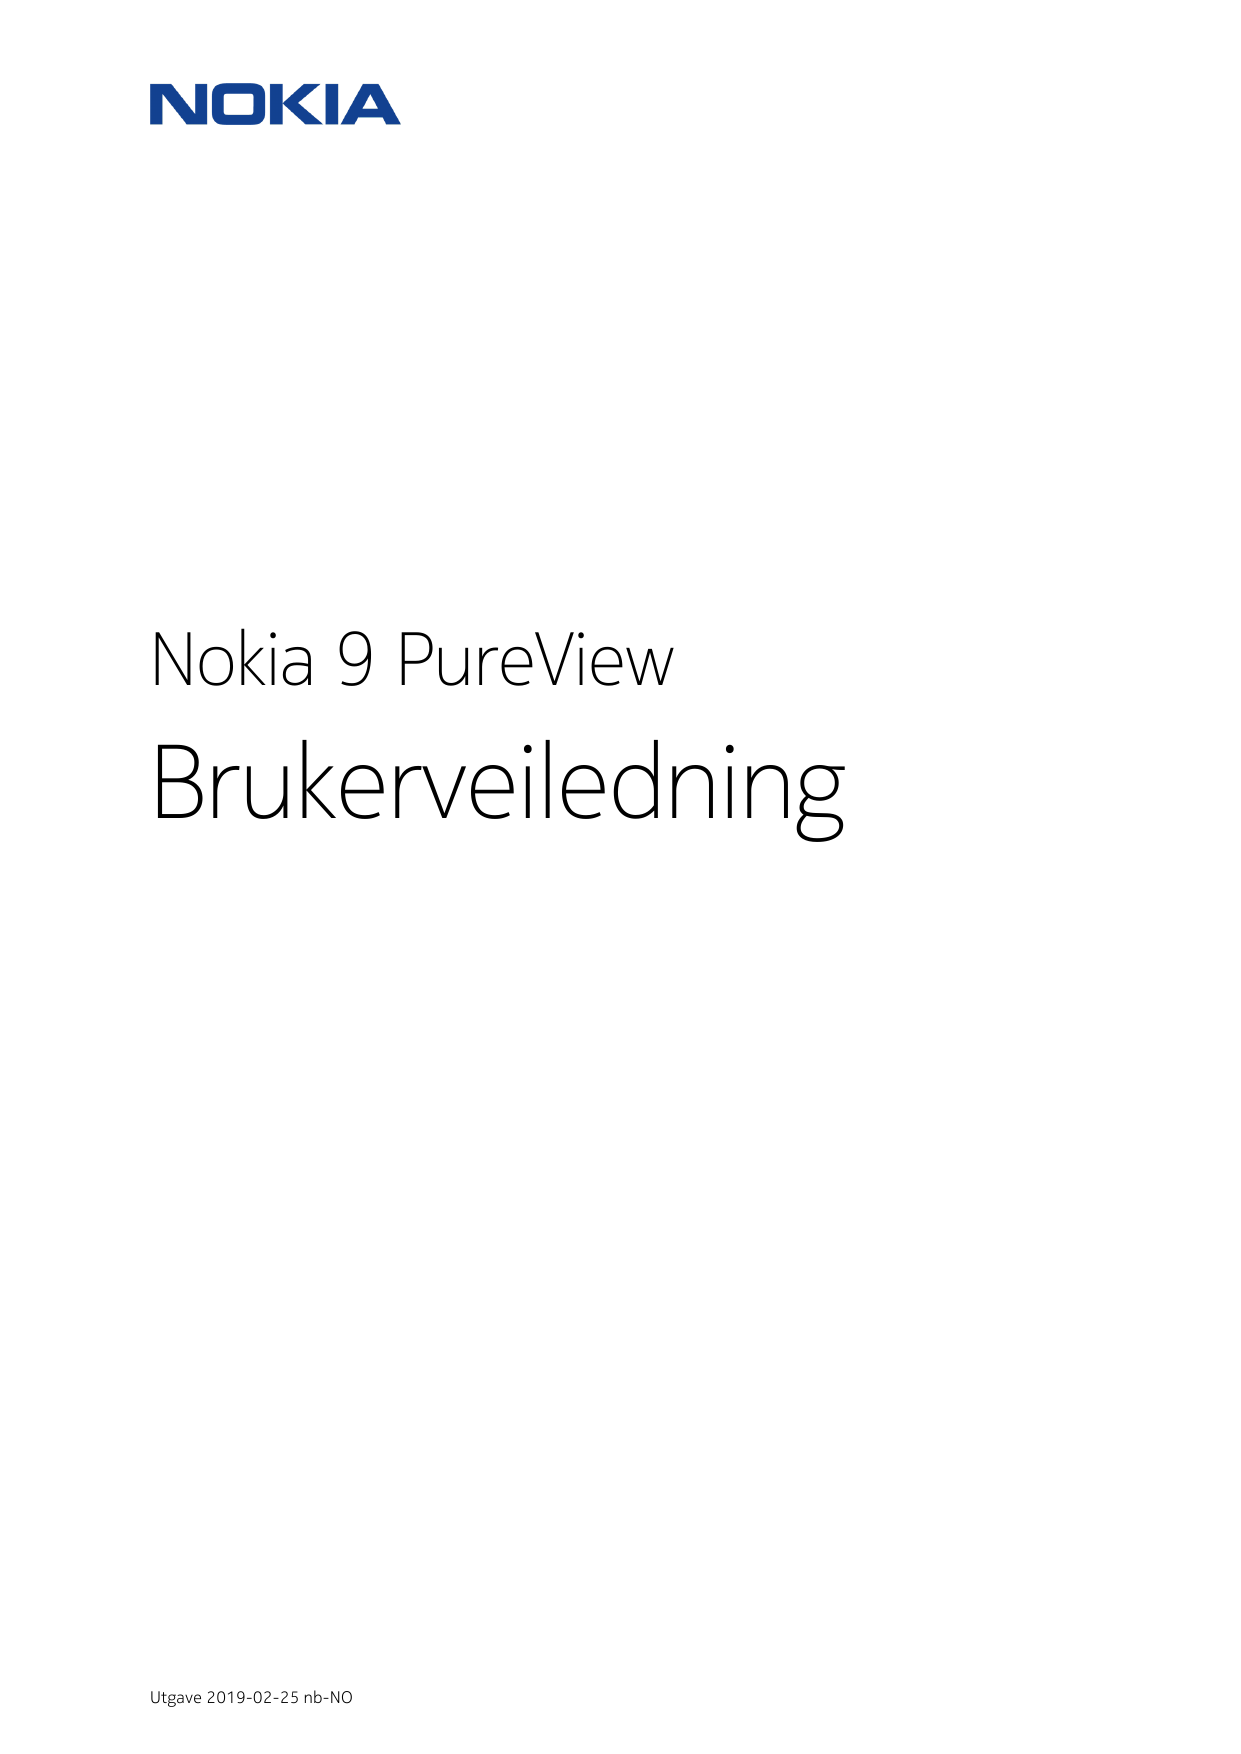 Nokia 9 PureViewBrukerveiledningUtgave 2019-02-25 nb-NO